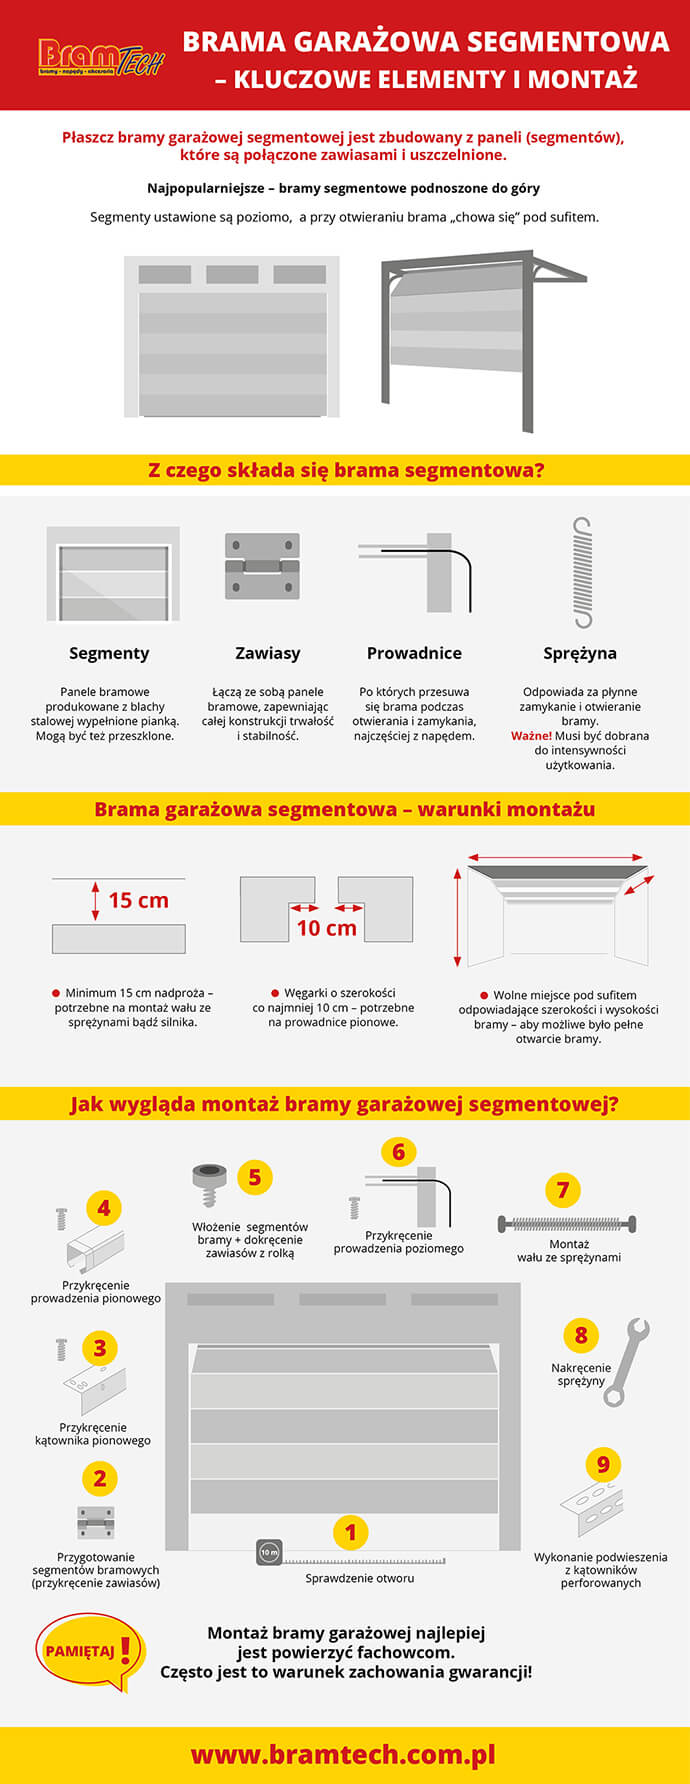 Brama garażowa segmentowa  – elementy i montaż (infografika) – bramtech.com.pl